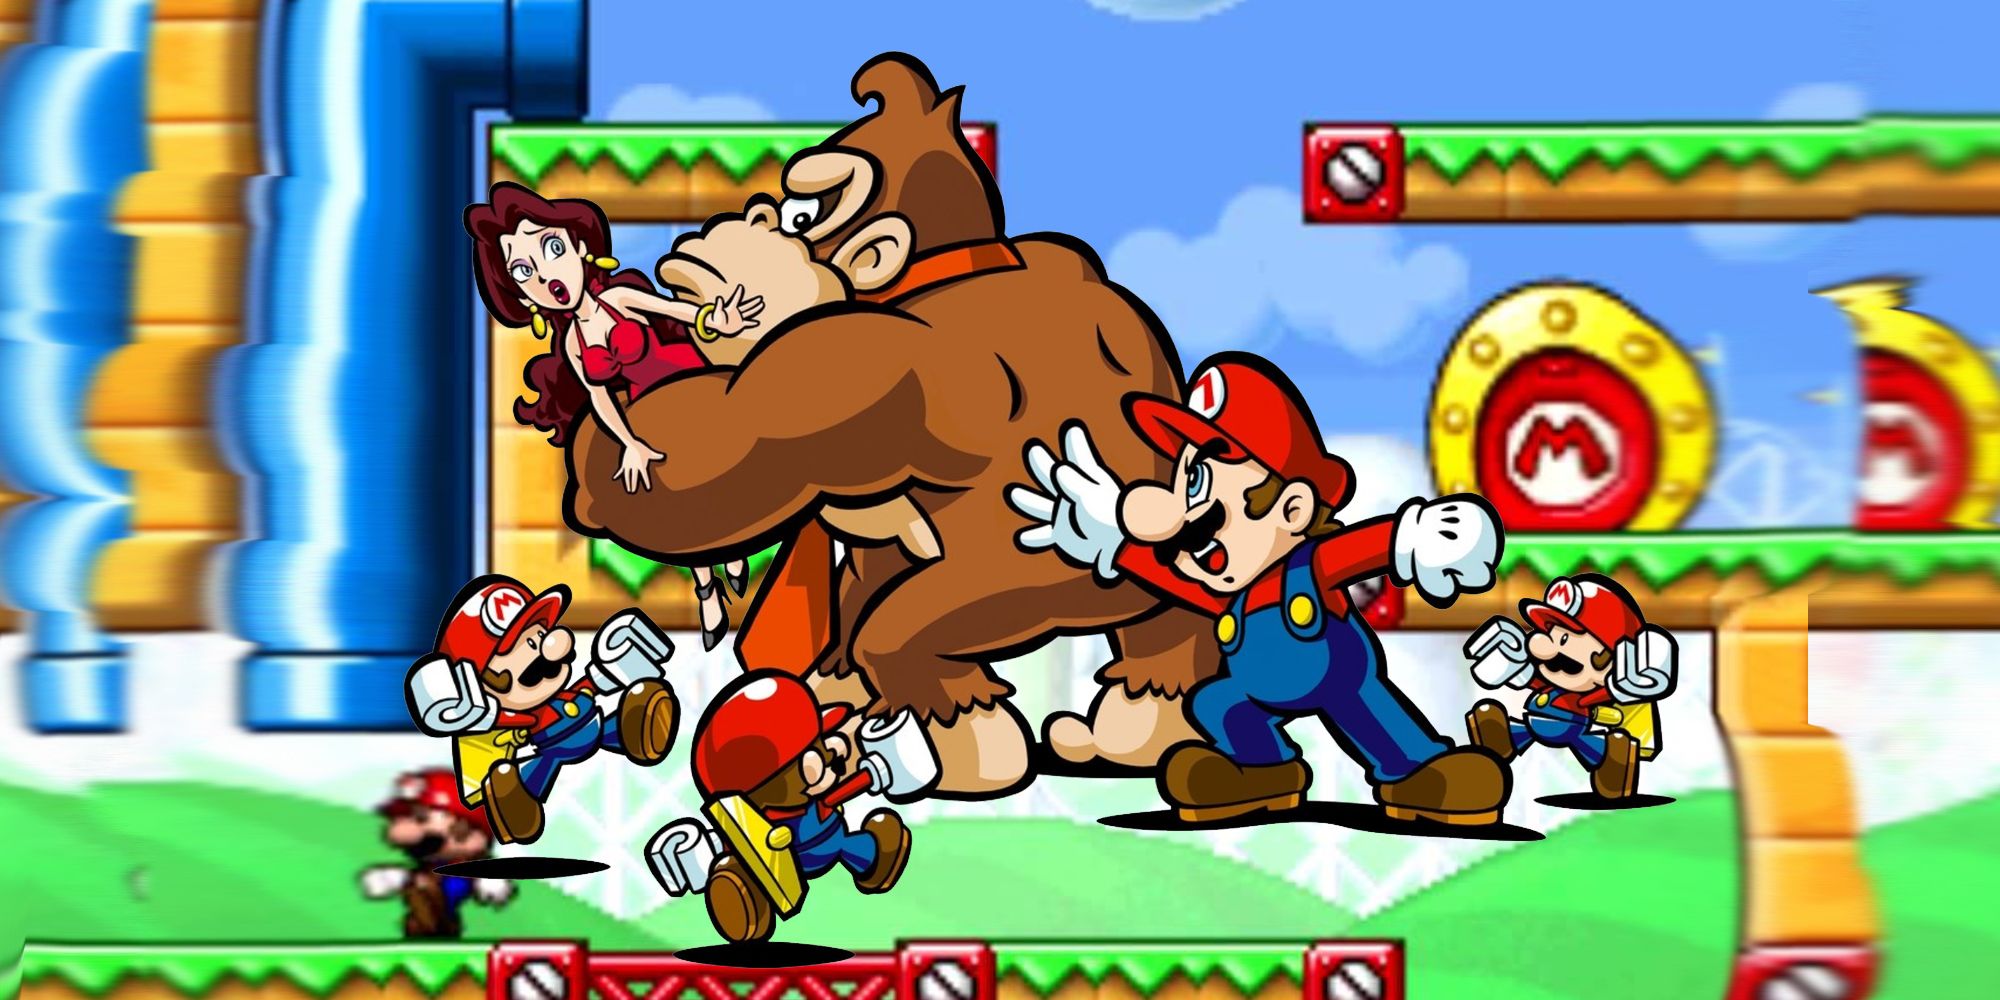 All Mario Vs Donkey Kong Games, Ranked